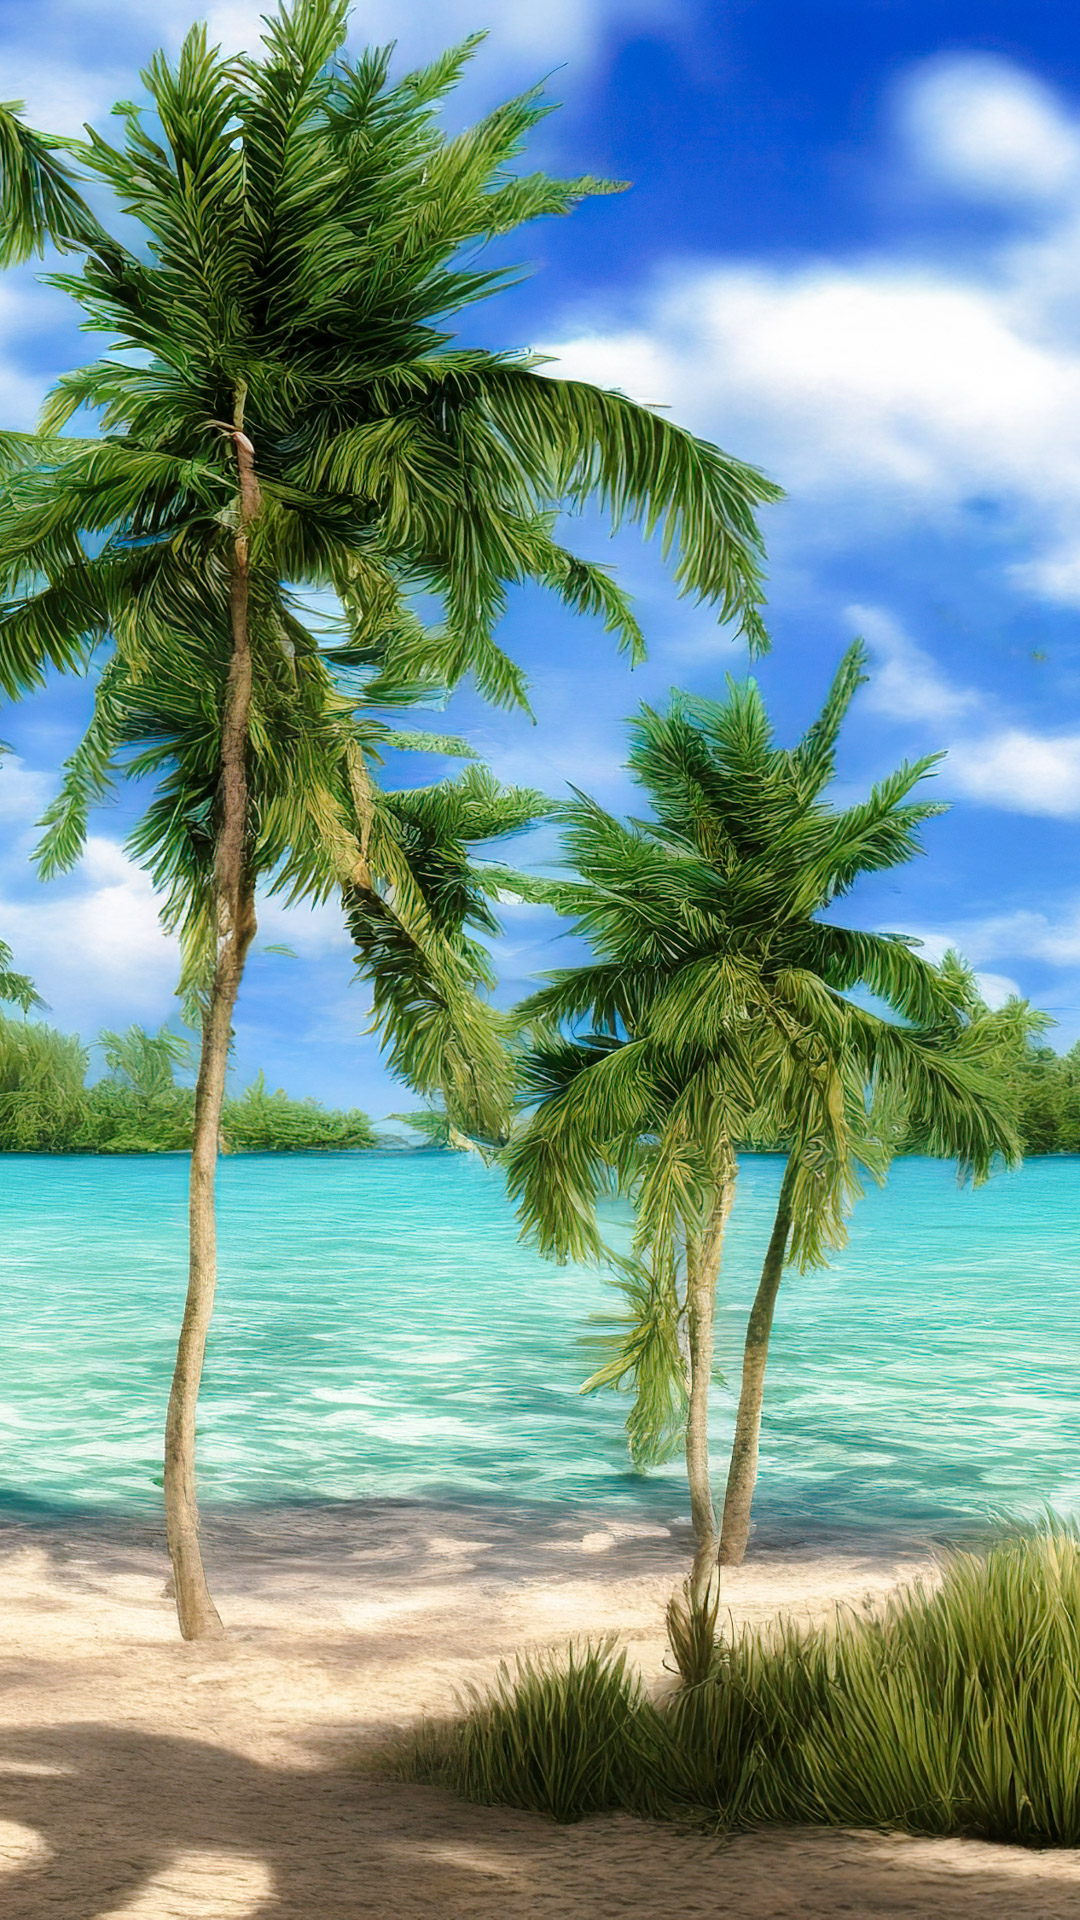 Vivez la tranquillité de nos arrière-plans de nature cool, présentant une plage tranquille avec des eaux turquoise cristallines et des palmiers se balançant dans la brise.